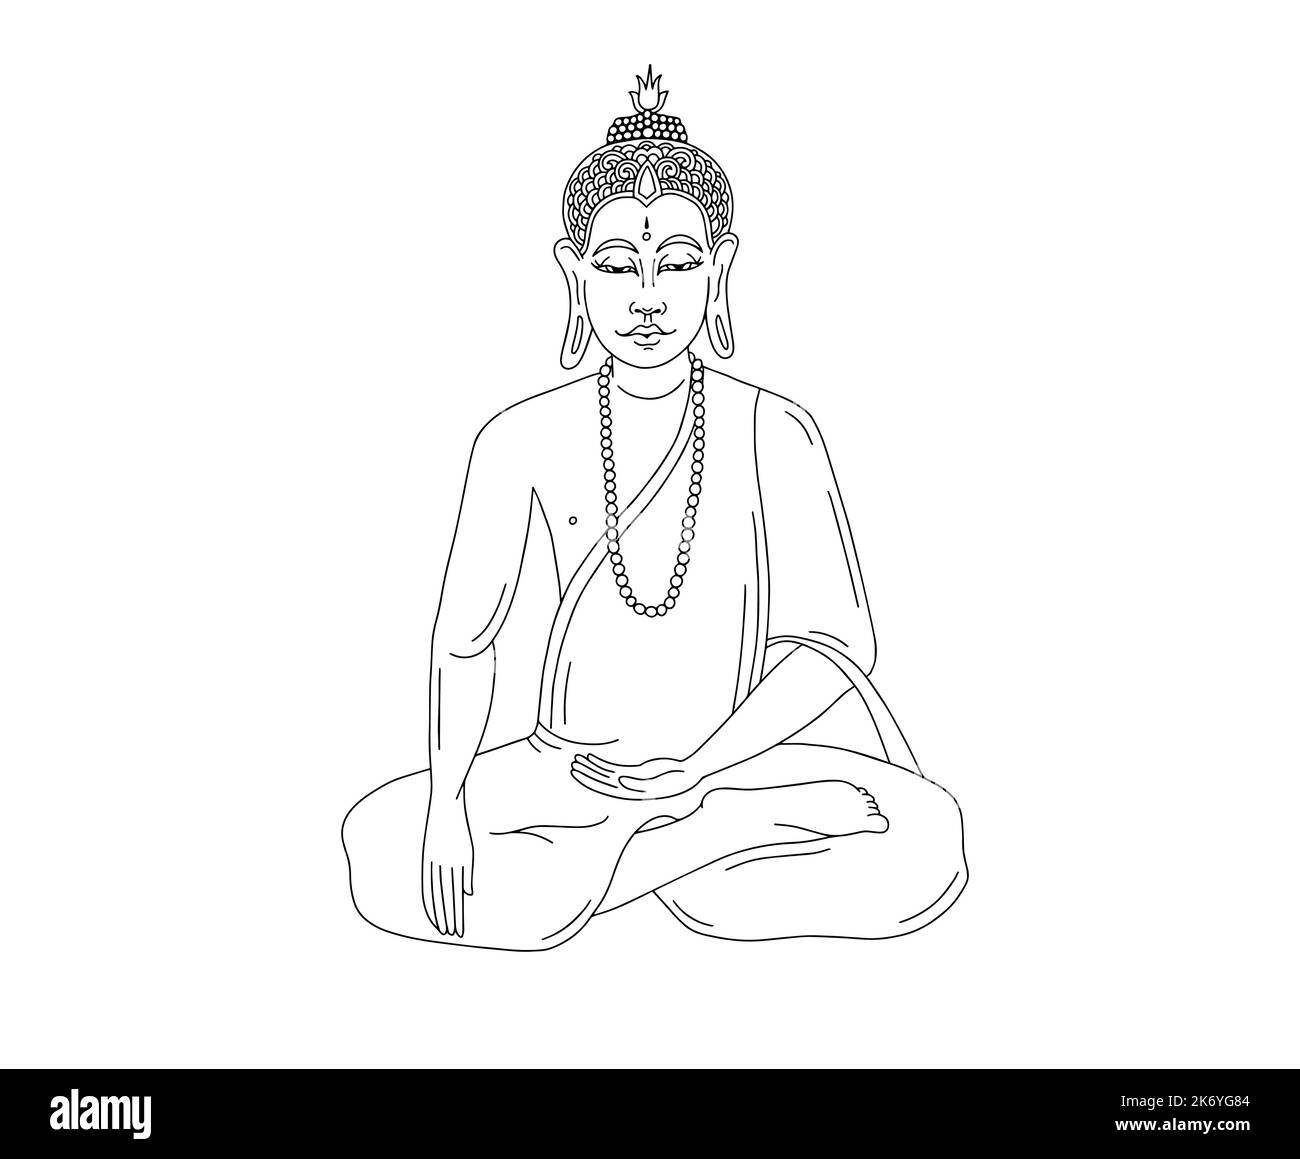 Image linéaire noir et blanc du Bouddha, illustration vectorielle Illustration de Vecteur